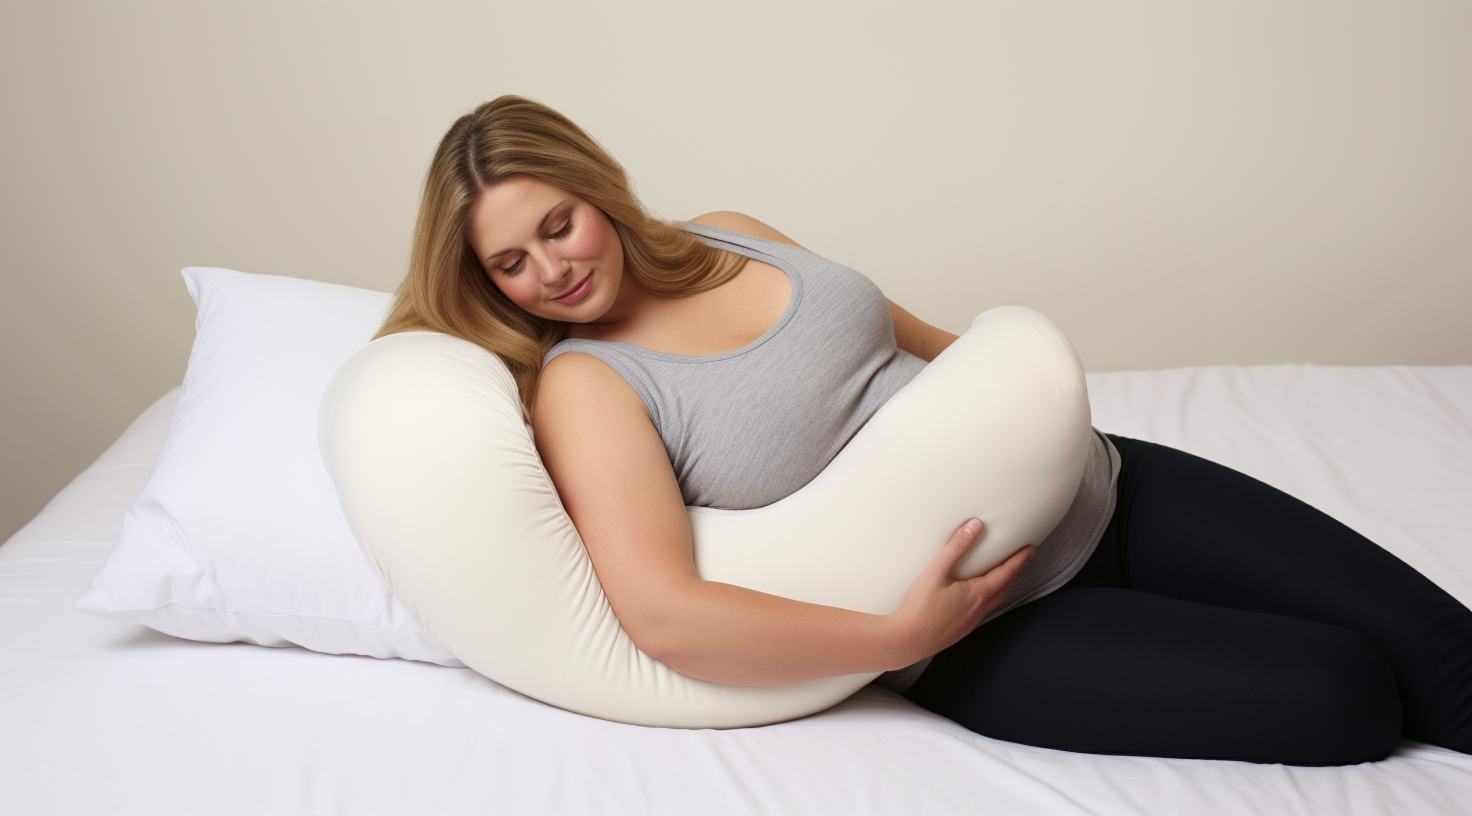 احتضان الراحة: دليلك إلى أفضل وسائد الحمل للأمهات الحوامل